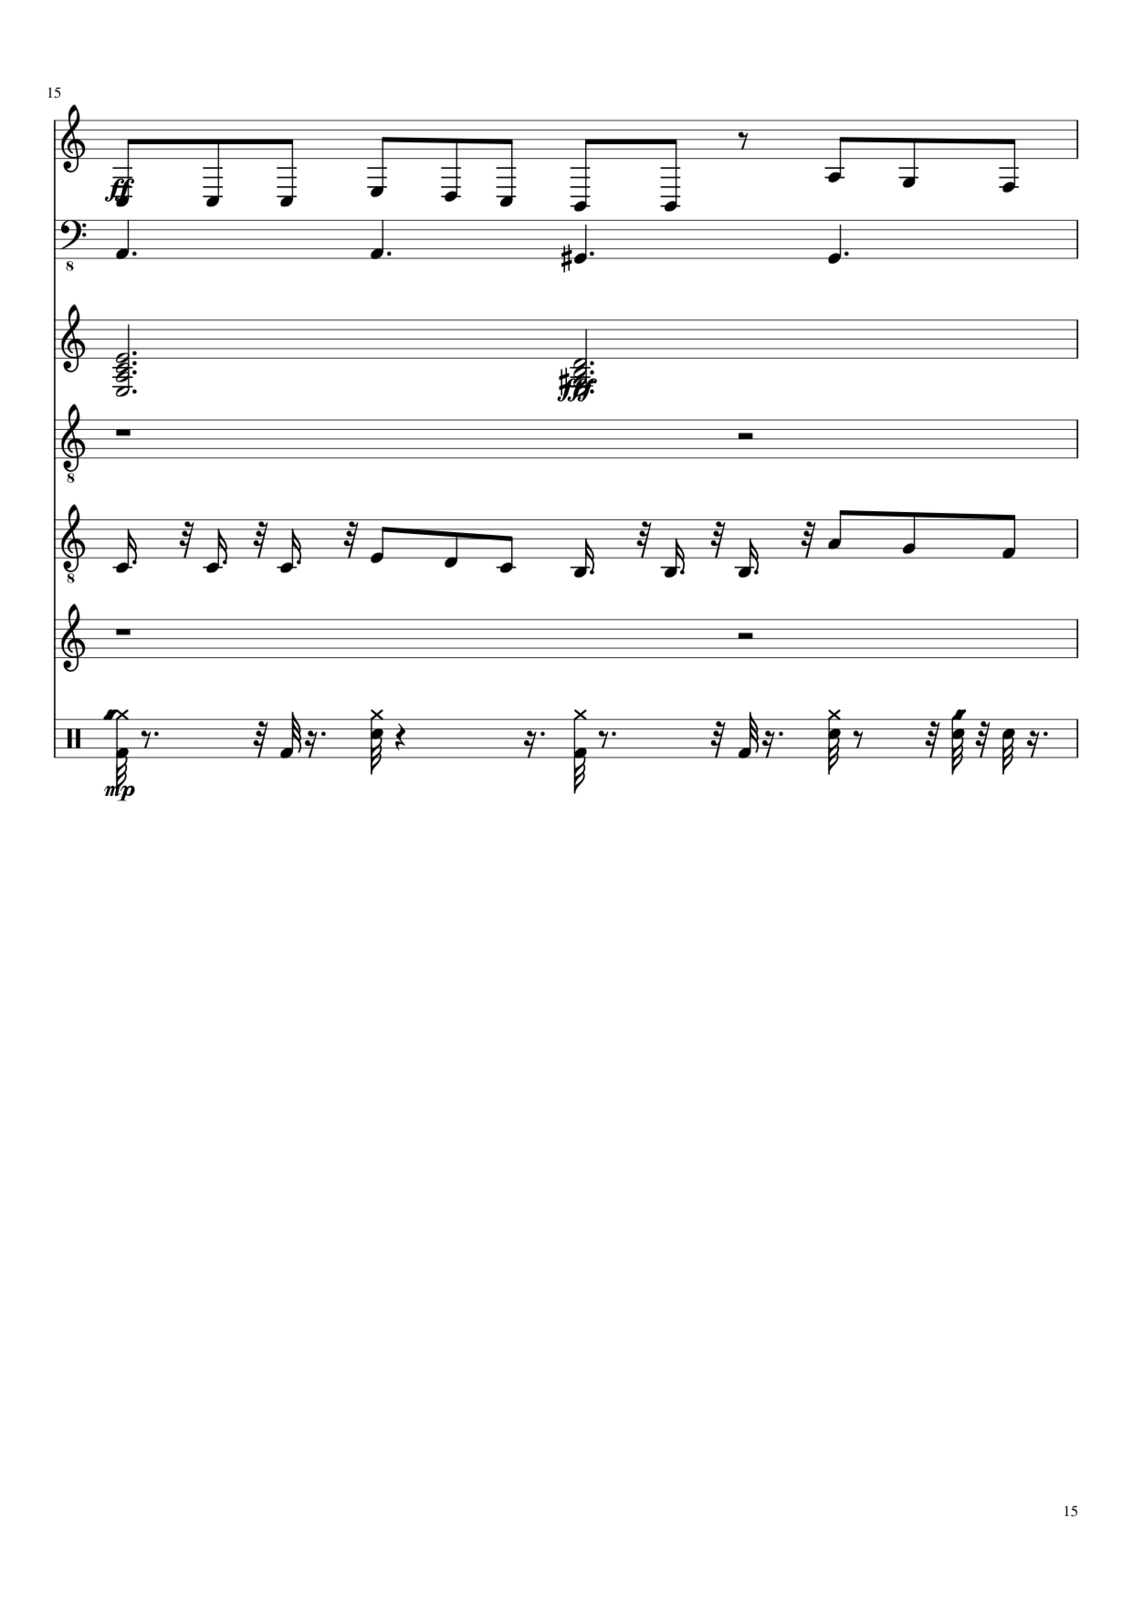 Vospominaniya o byiloy lyubvi slide, Image 3